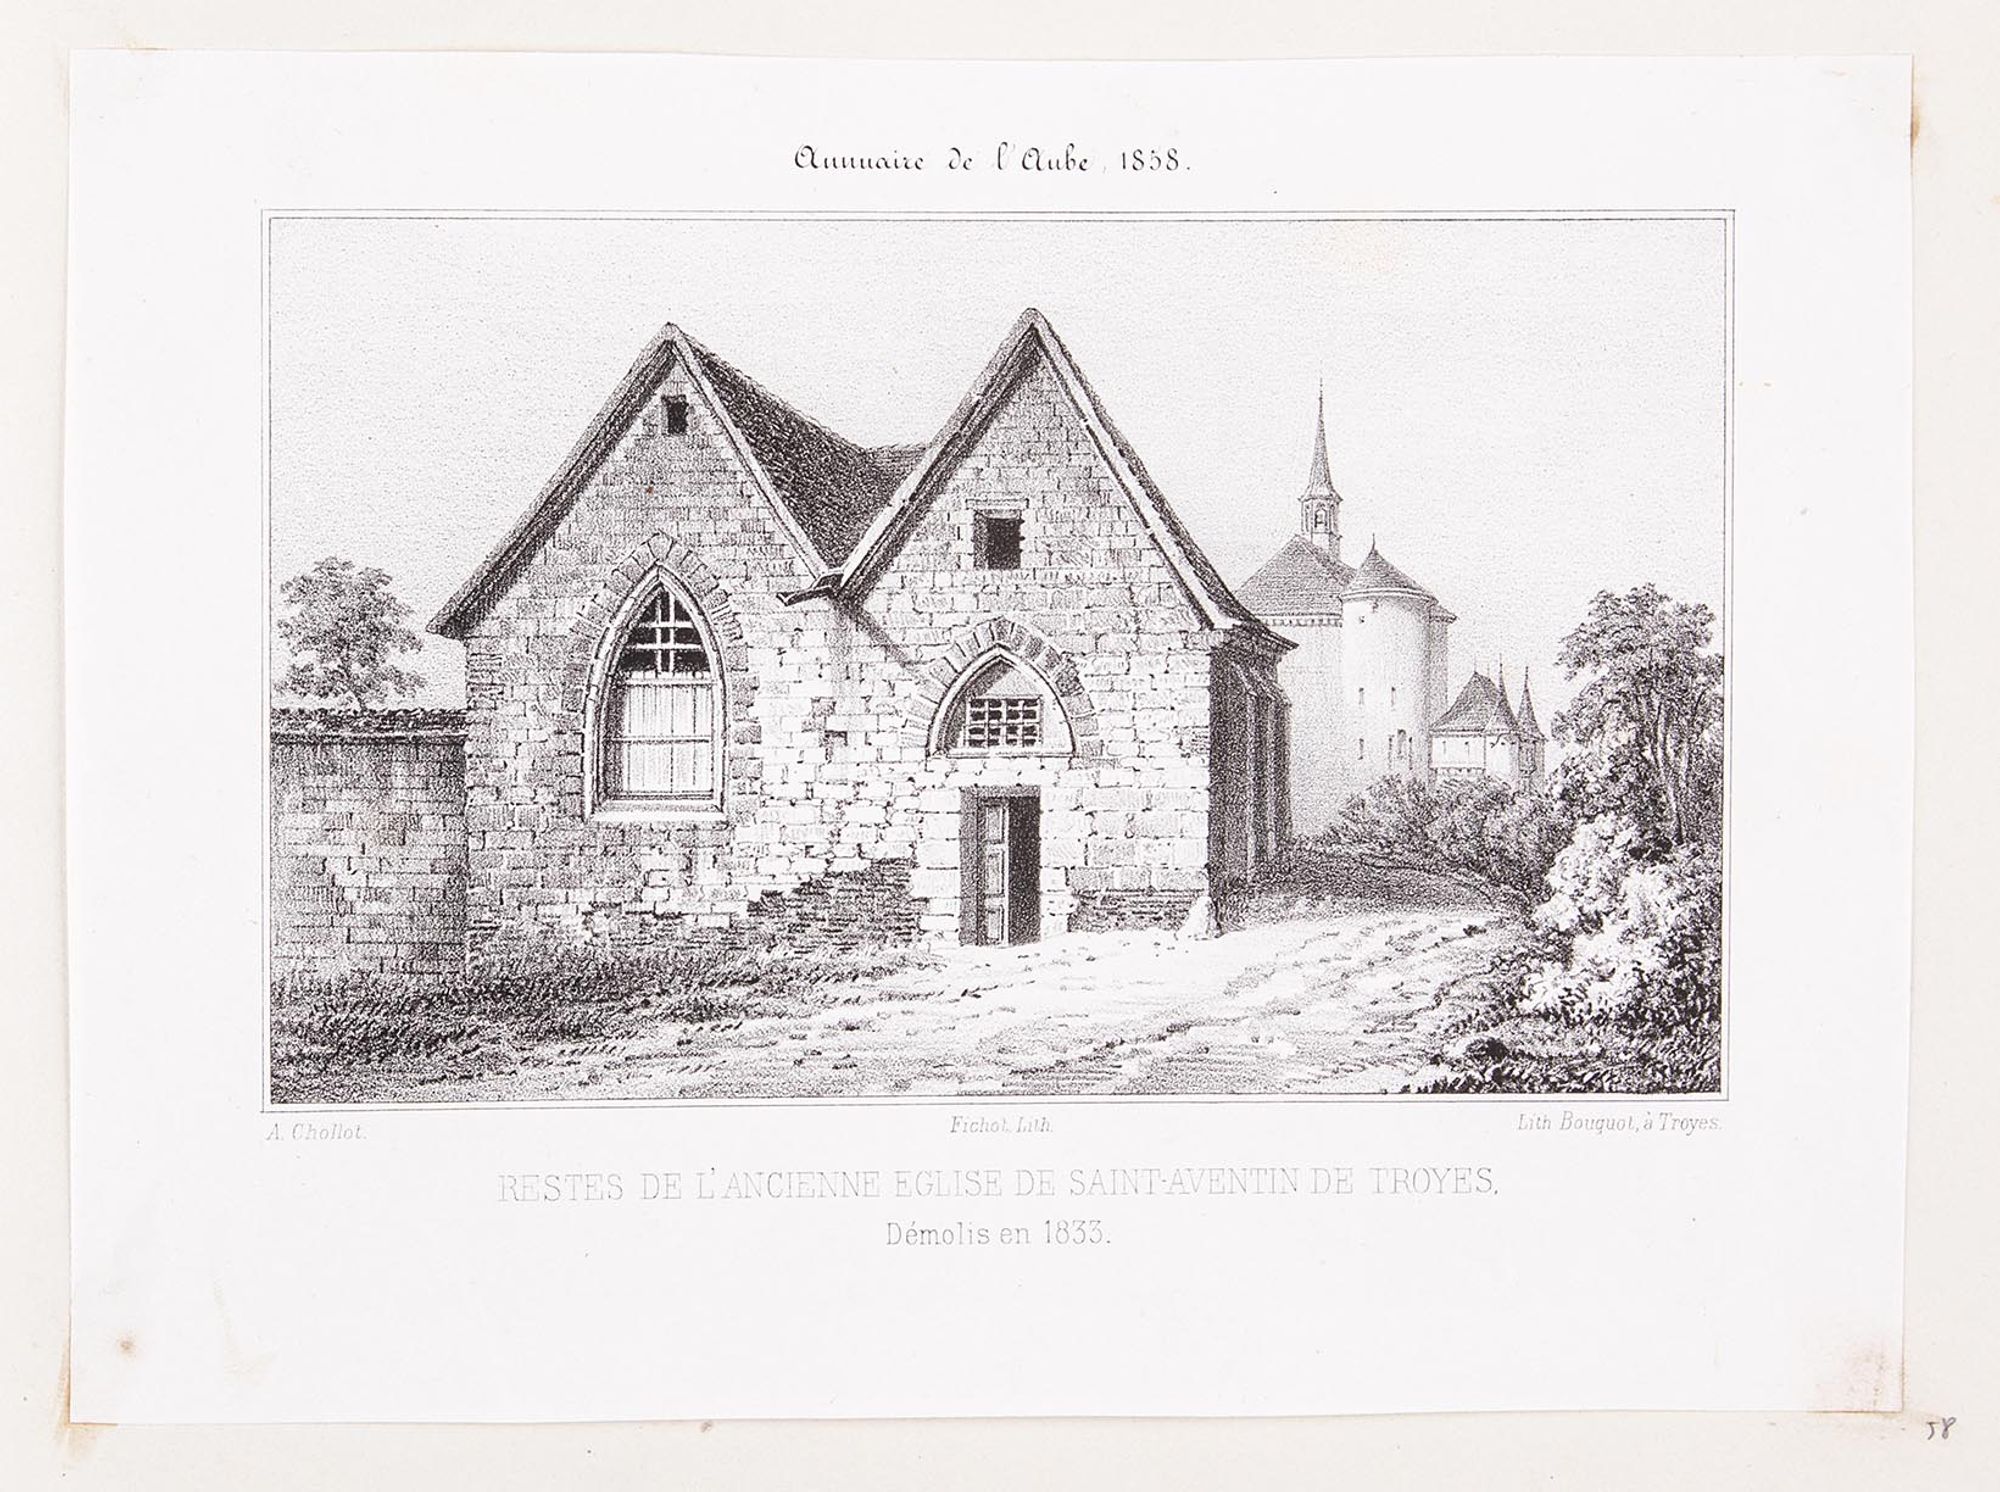 Lithographie. « Restes de l'ancienne église de Saint-Aventin de Troyes. Démolis en 1833 ». Extrait de l'Annuaire de l'Aube, Troyes, 1858.